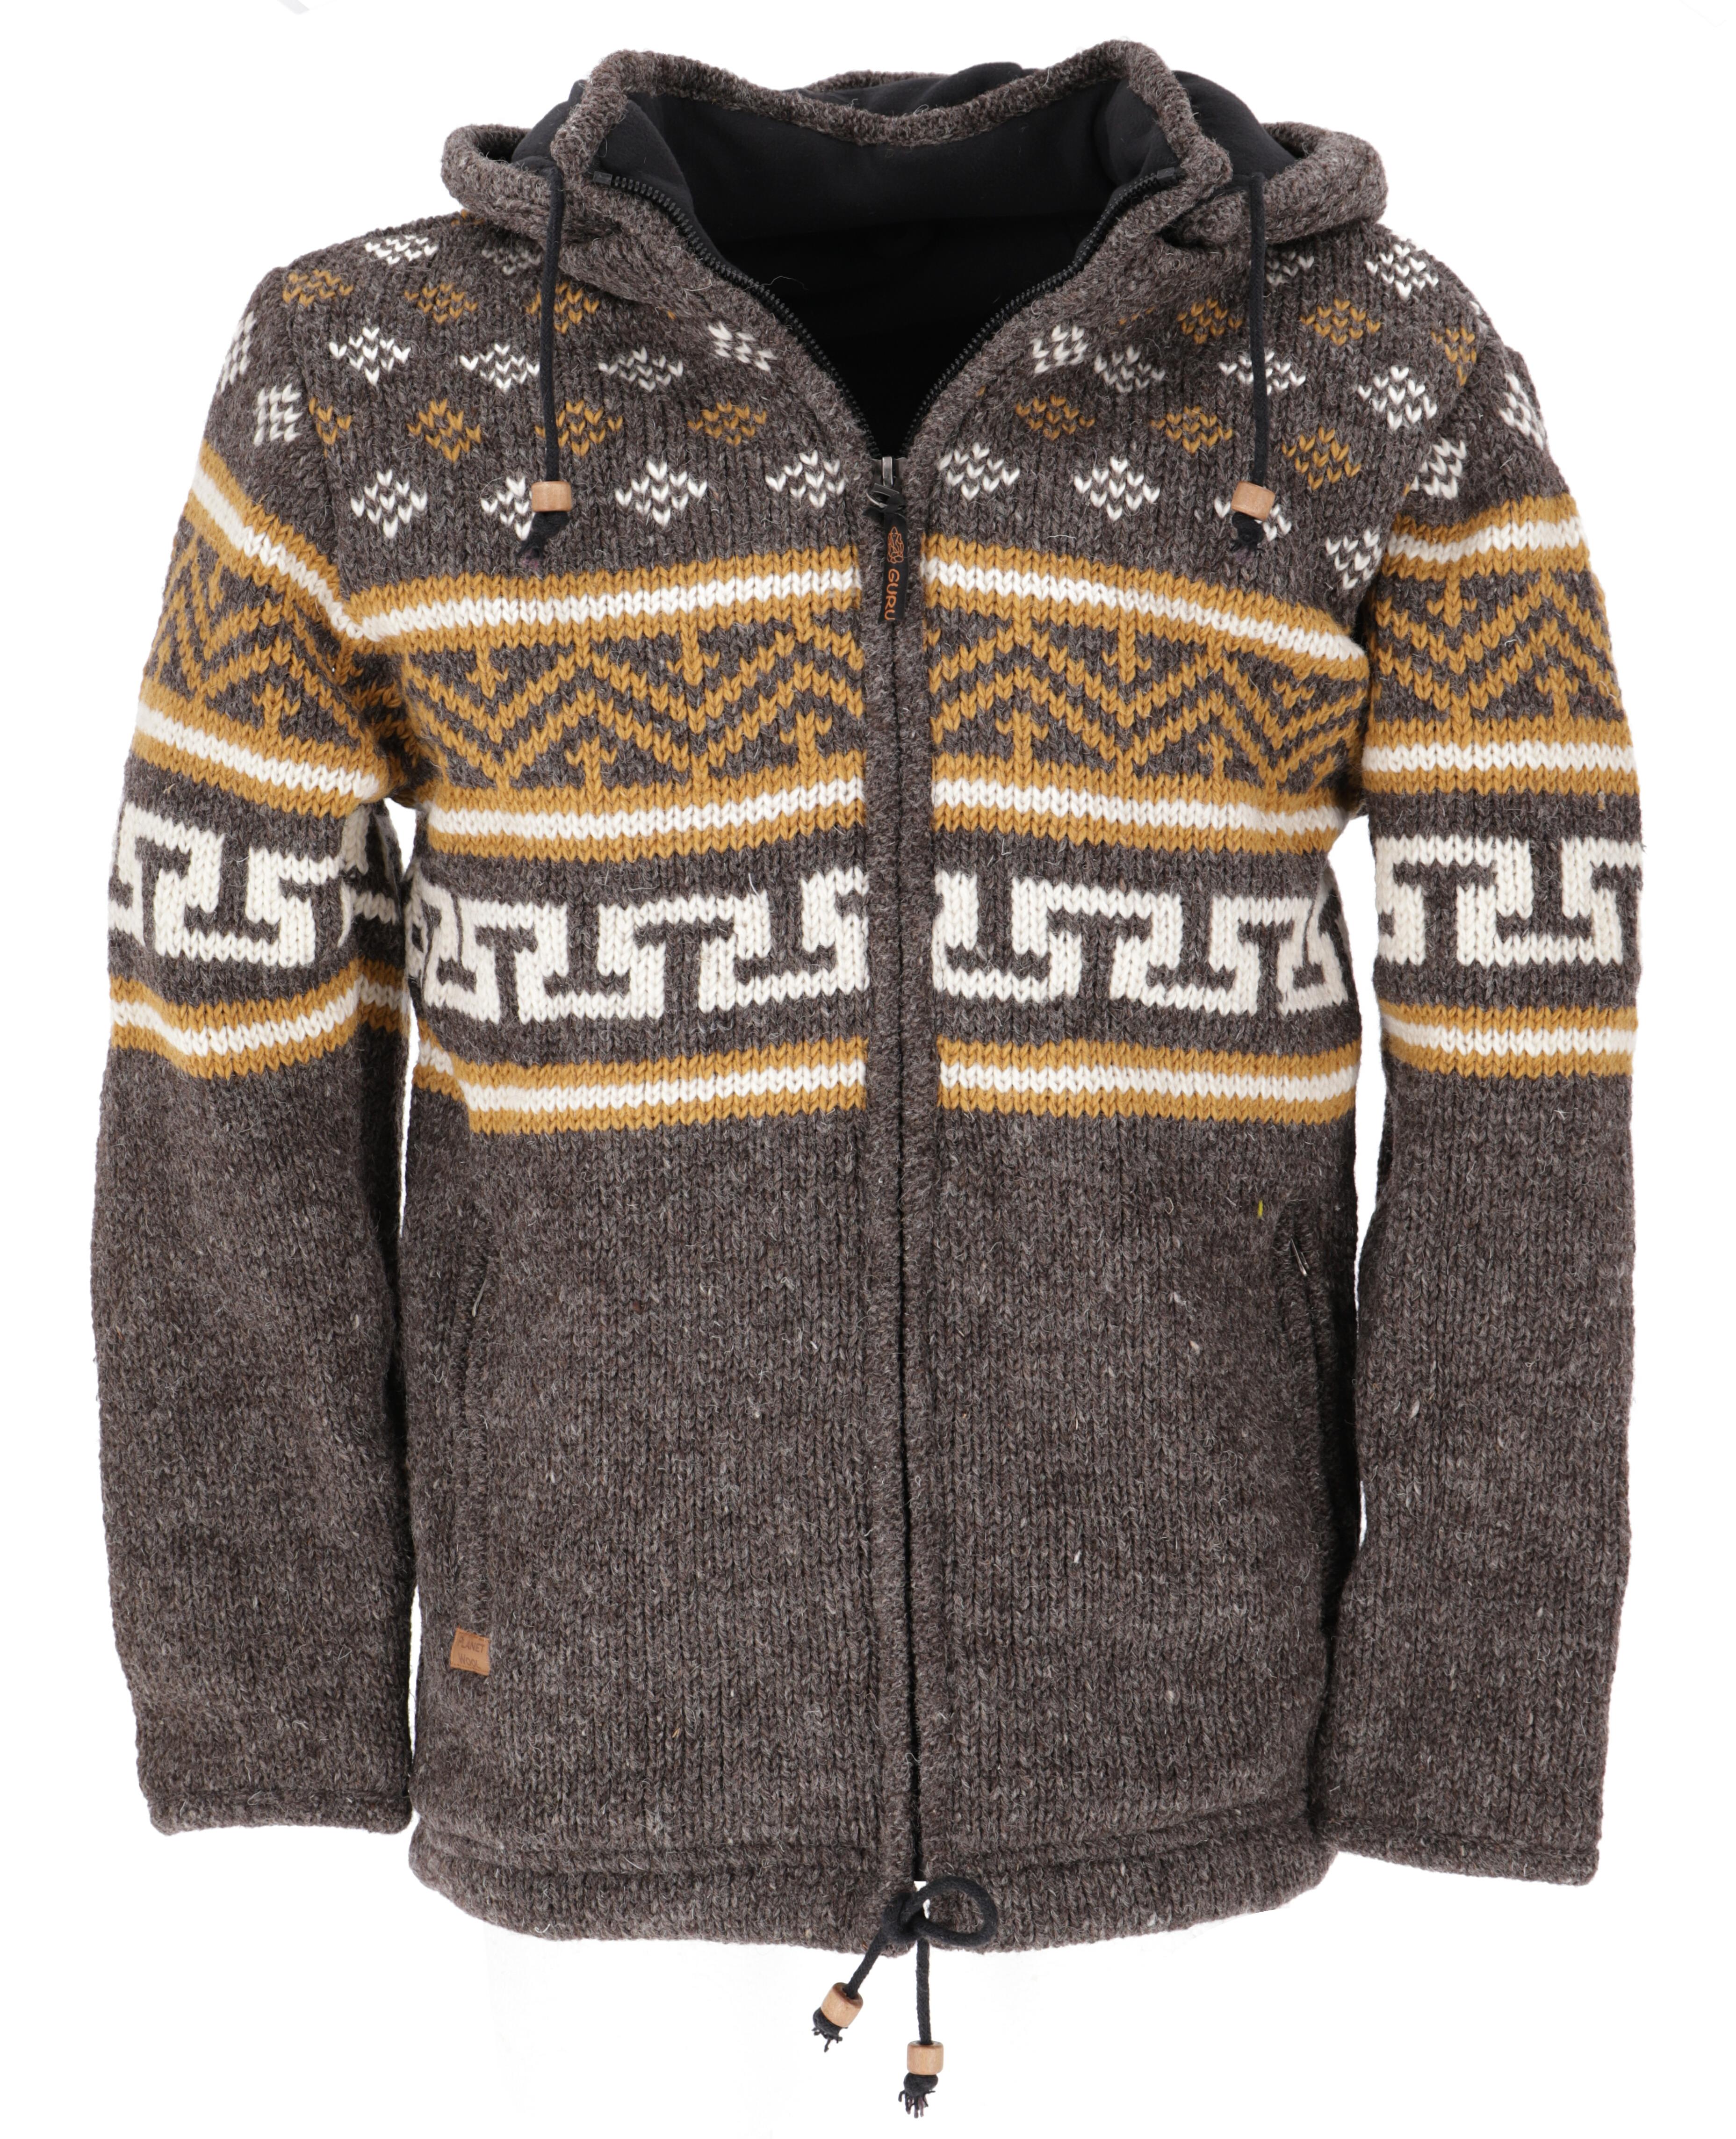 bredde Afvise tilstrækkelig Nordic pattern wool jacket, cardigan brown/mustard - model 4